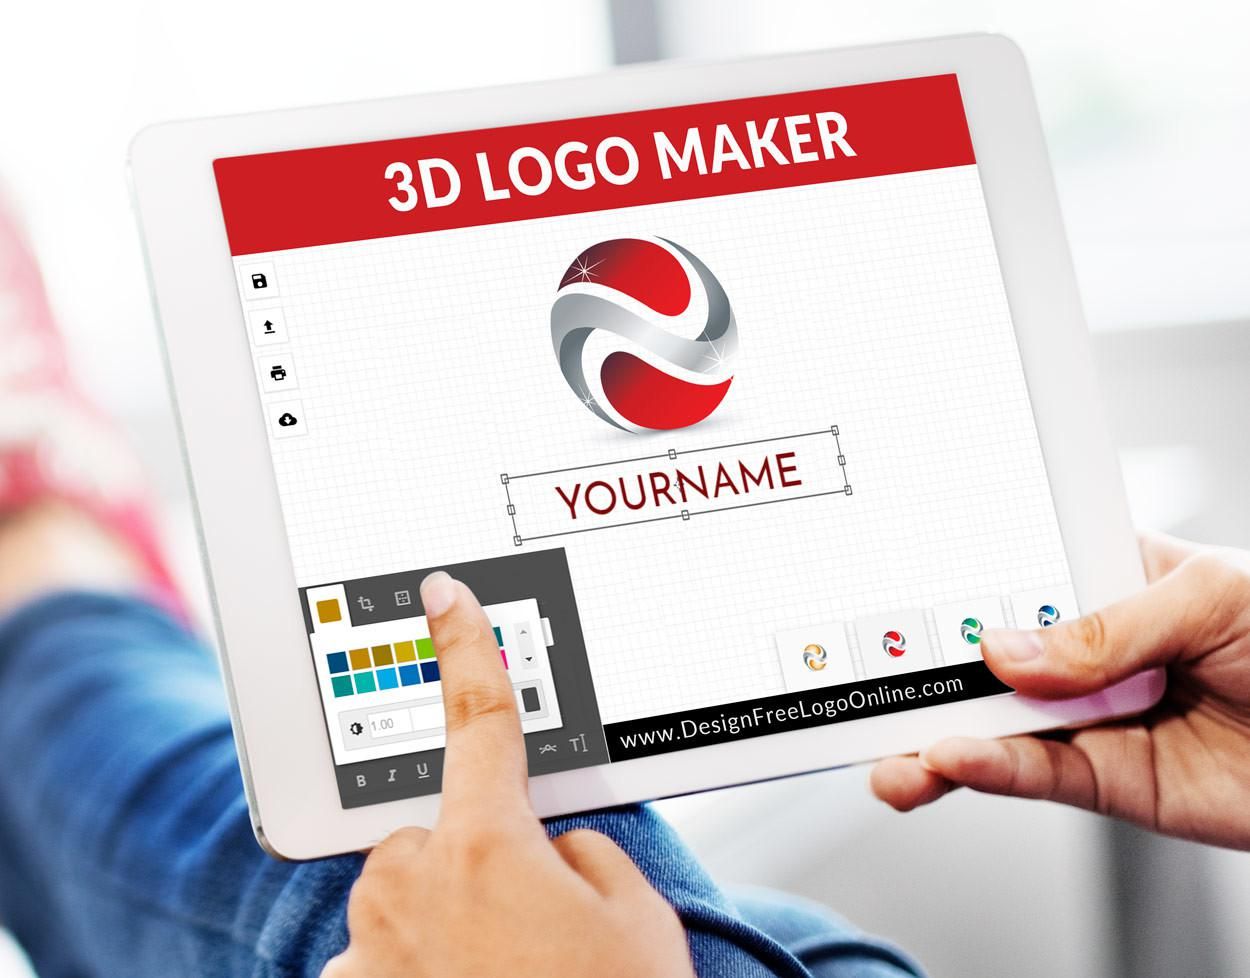 3D logo maker